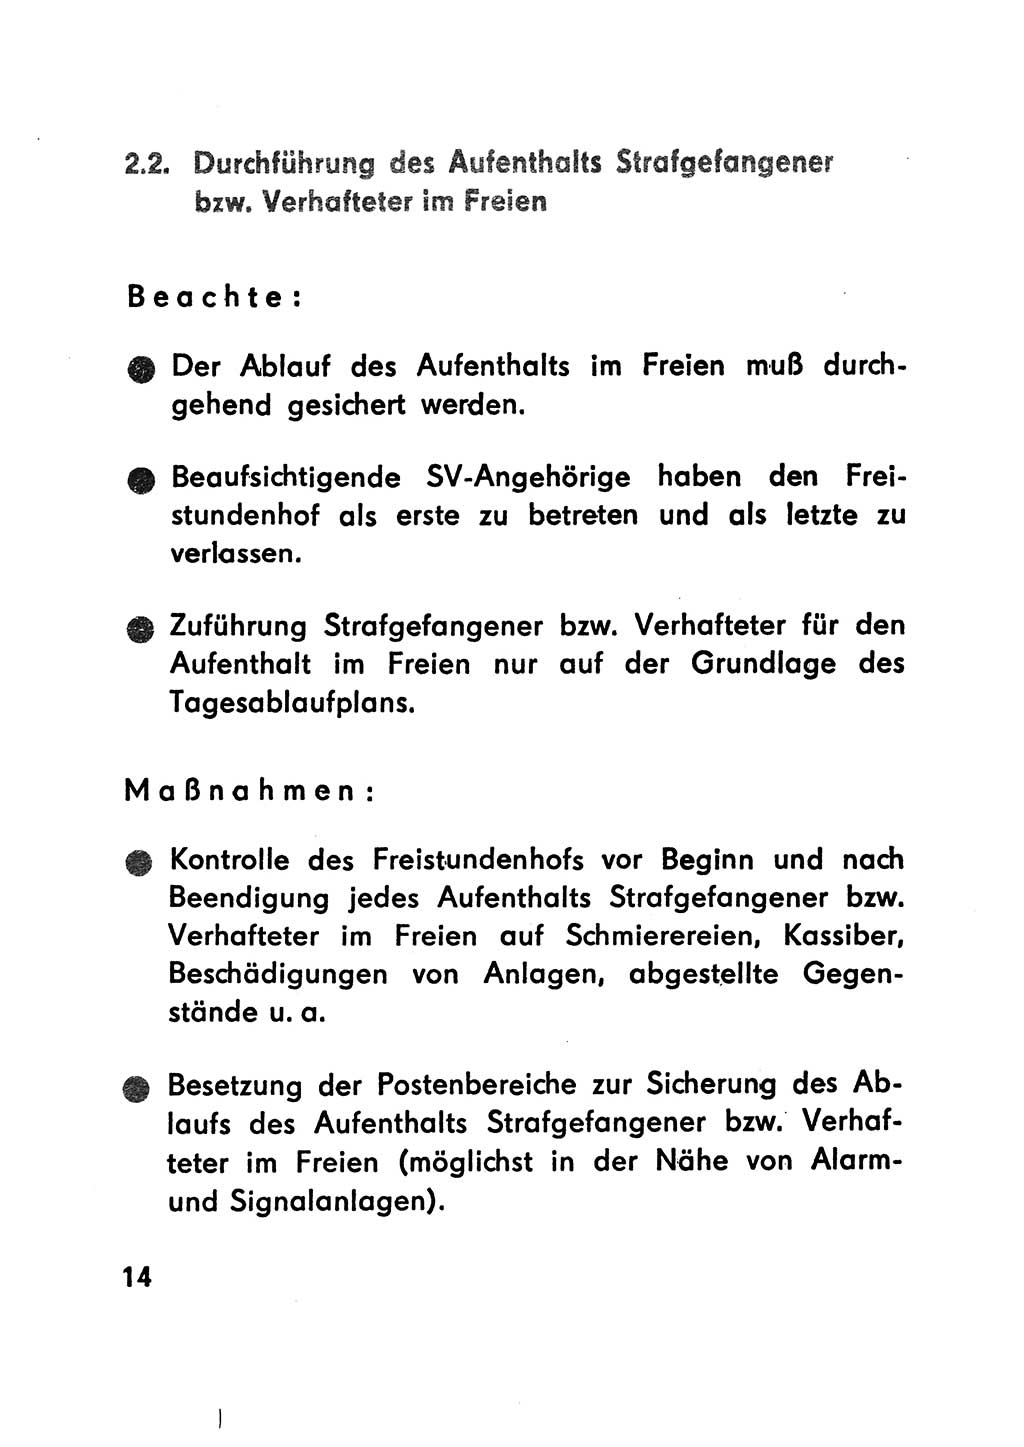 Merkbuch für SV-Angehörige [Strafvollzug (SV) Deutsche Demokratische Republik (DDR)] 1975, Seite 14 (SV-Angeh. DDR 1975, S. 14)